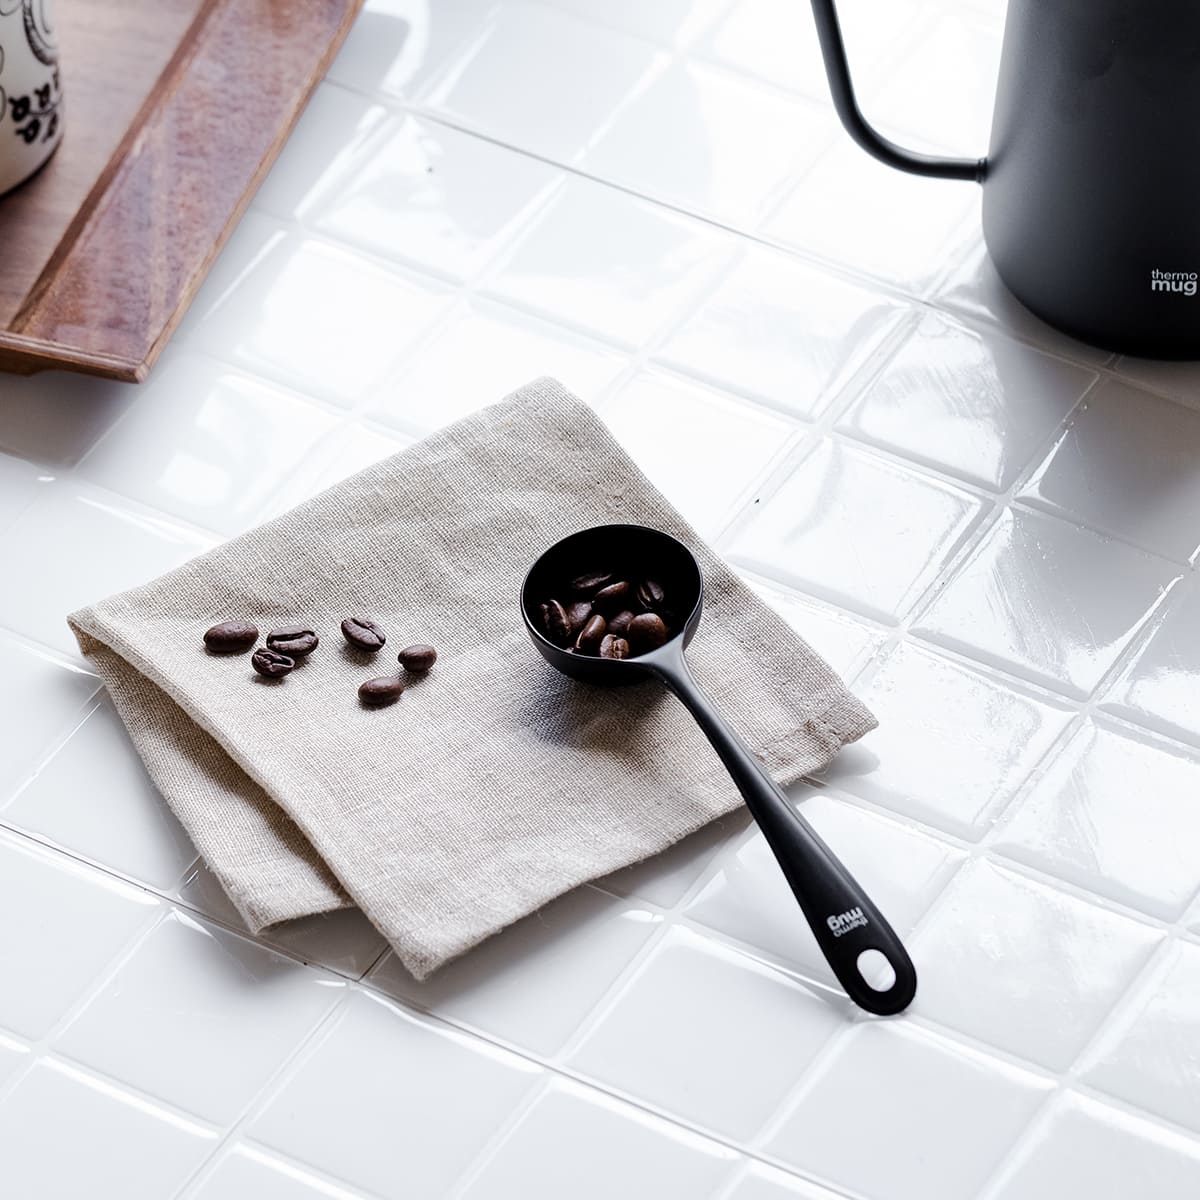 【テーブルウェアまとめ割対象】【thermo mug】TSUBAME 燕 COFFEE MEASURE SPOON コーヒーメジャースプーン_T-CMS21(ブラック)